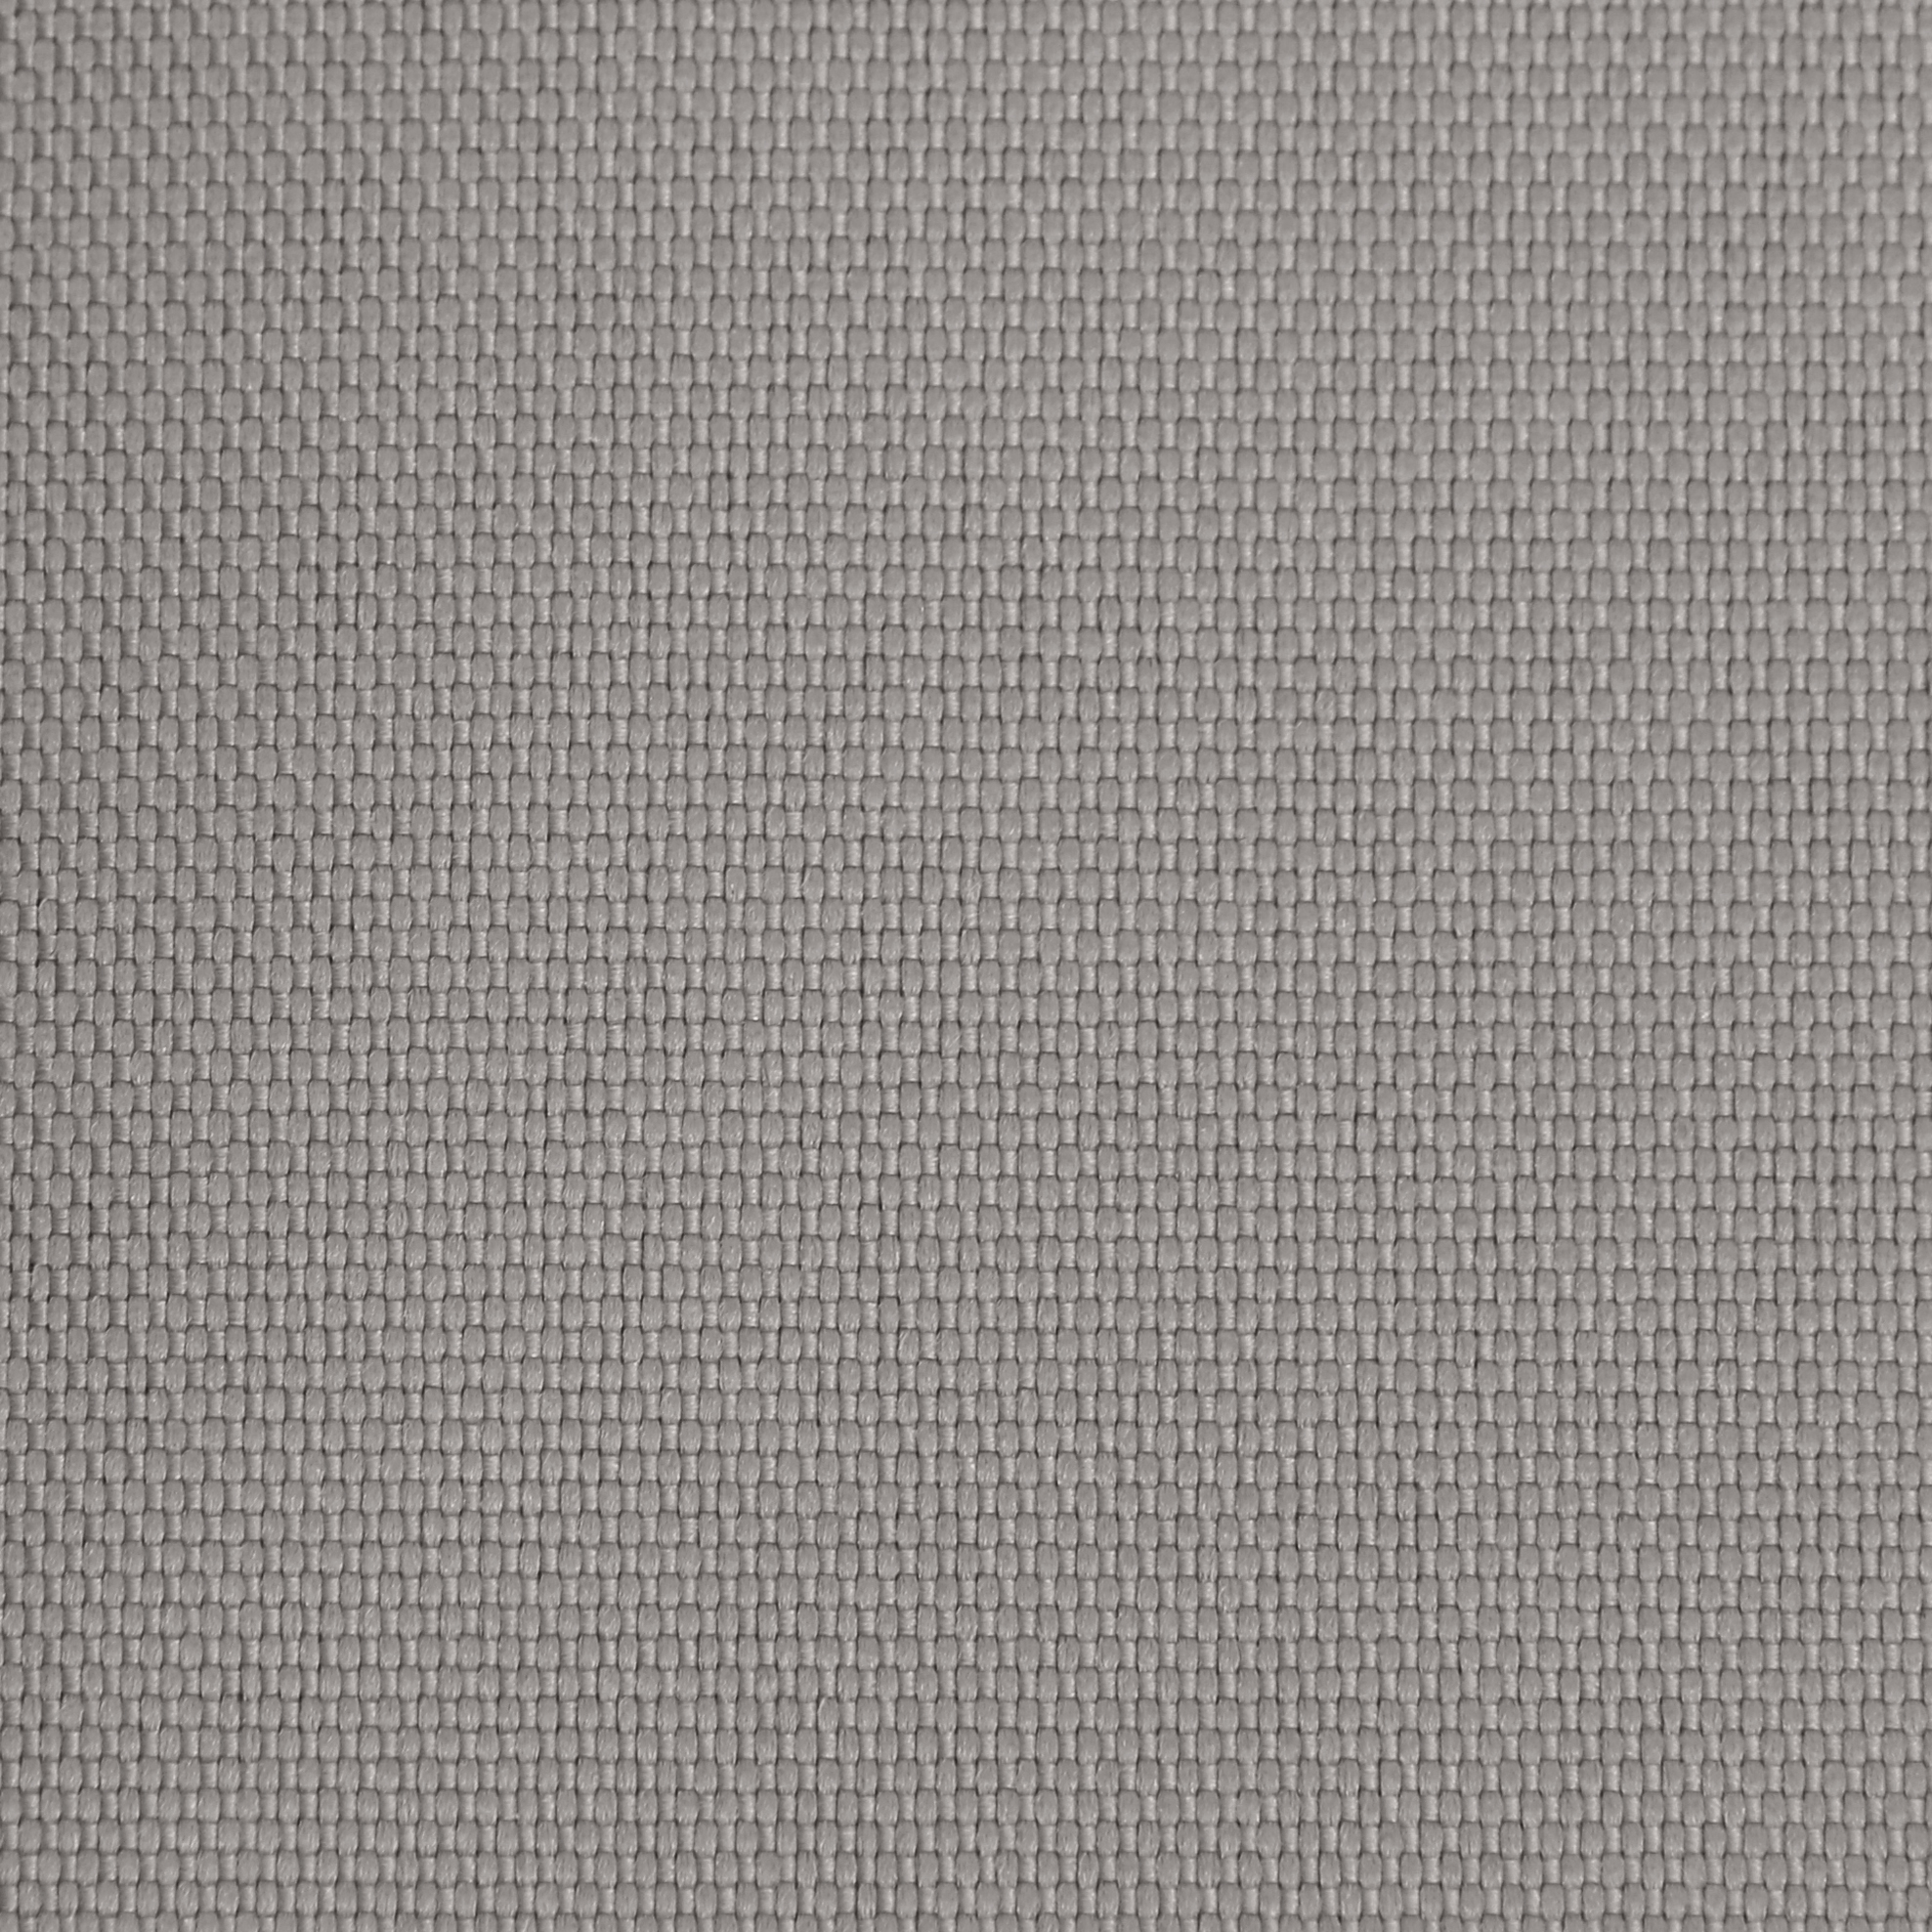 Ткань Оксфорд 600D размер 2м*1,5м арт. 600200660 цвет серый